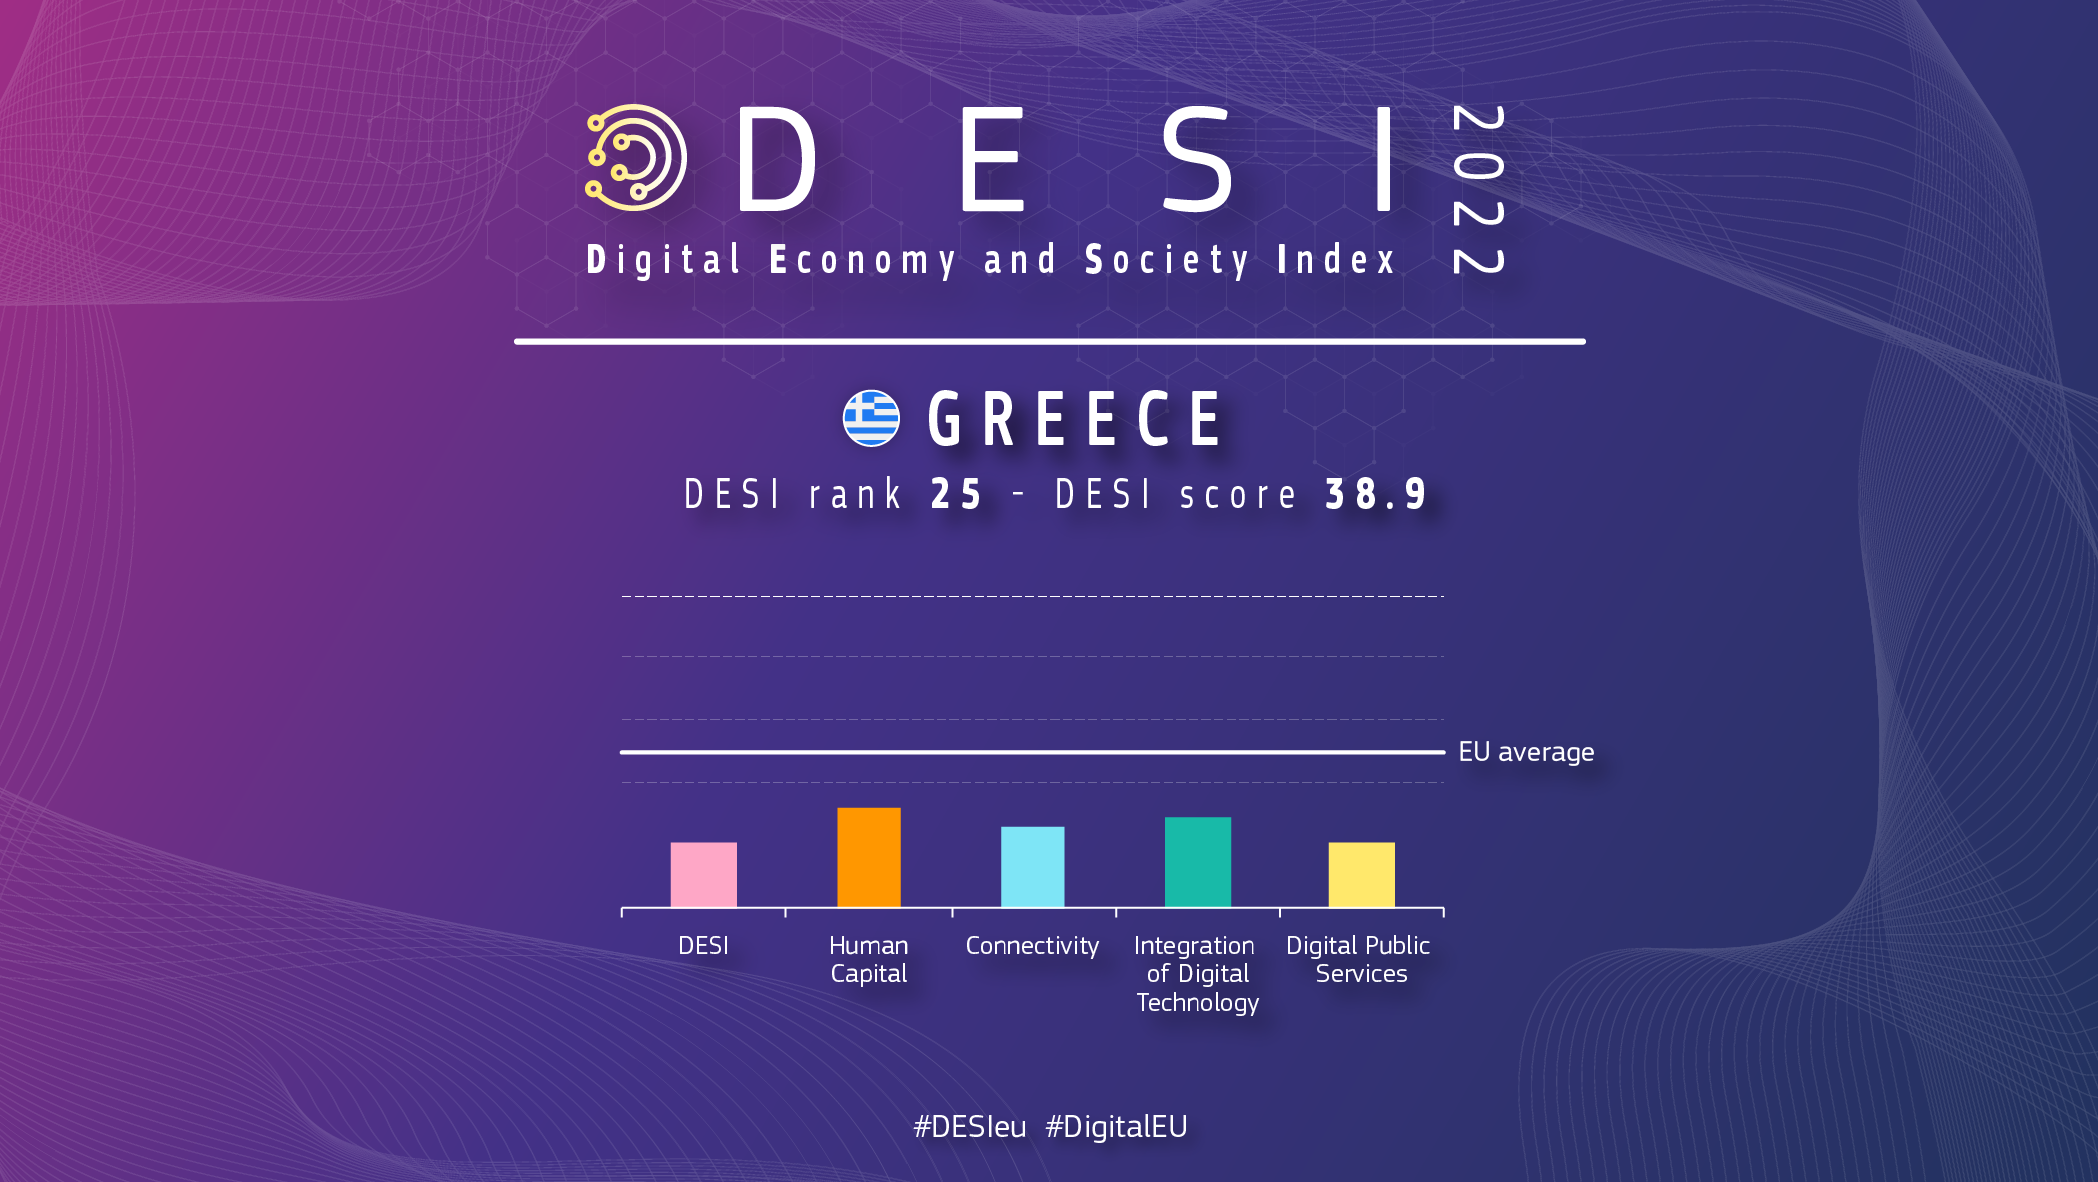 Aperçu graphique de la Grèce dans DESI montrant un classement de 25 et un score de 38,9